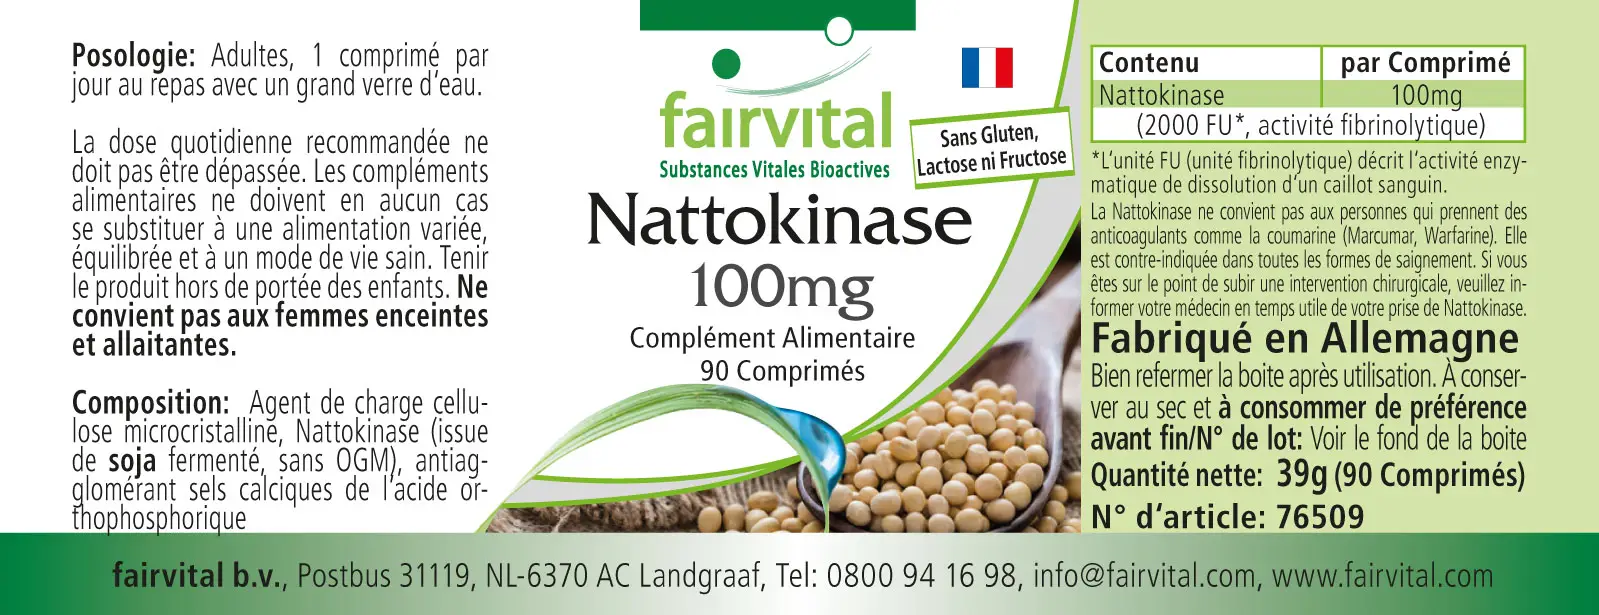 Nattokinase 100mg - 90 tabletten